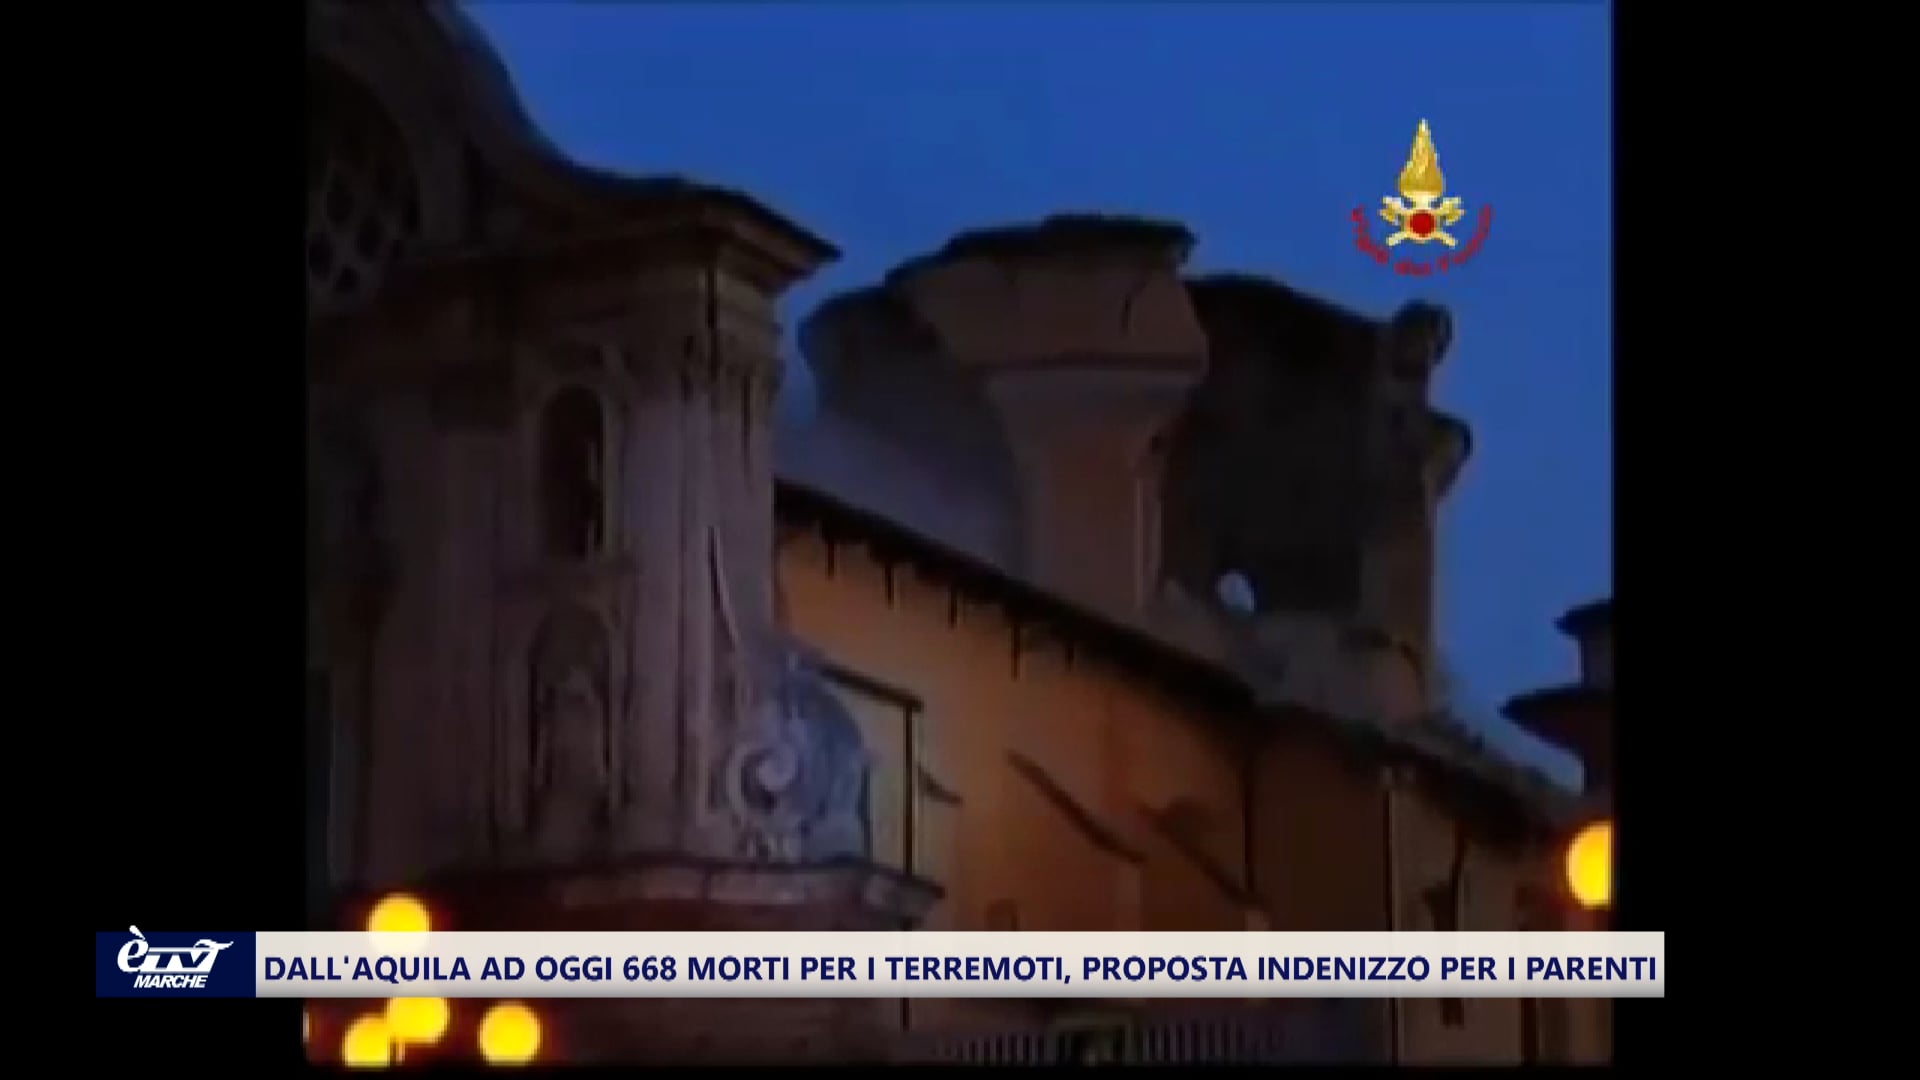 Sisma, quasi 700 morti dall'Aquila a oggi: la proposta di indennizzo per le vittime - VIDEO